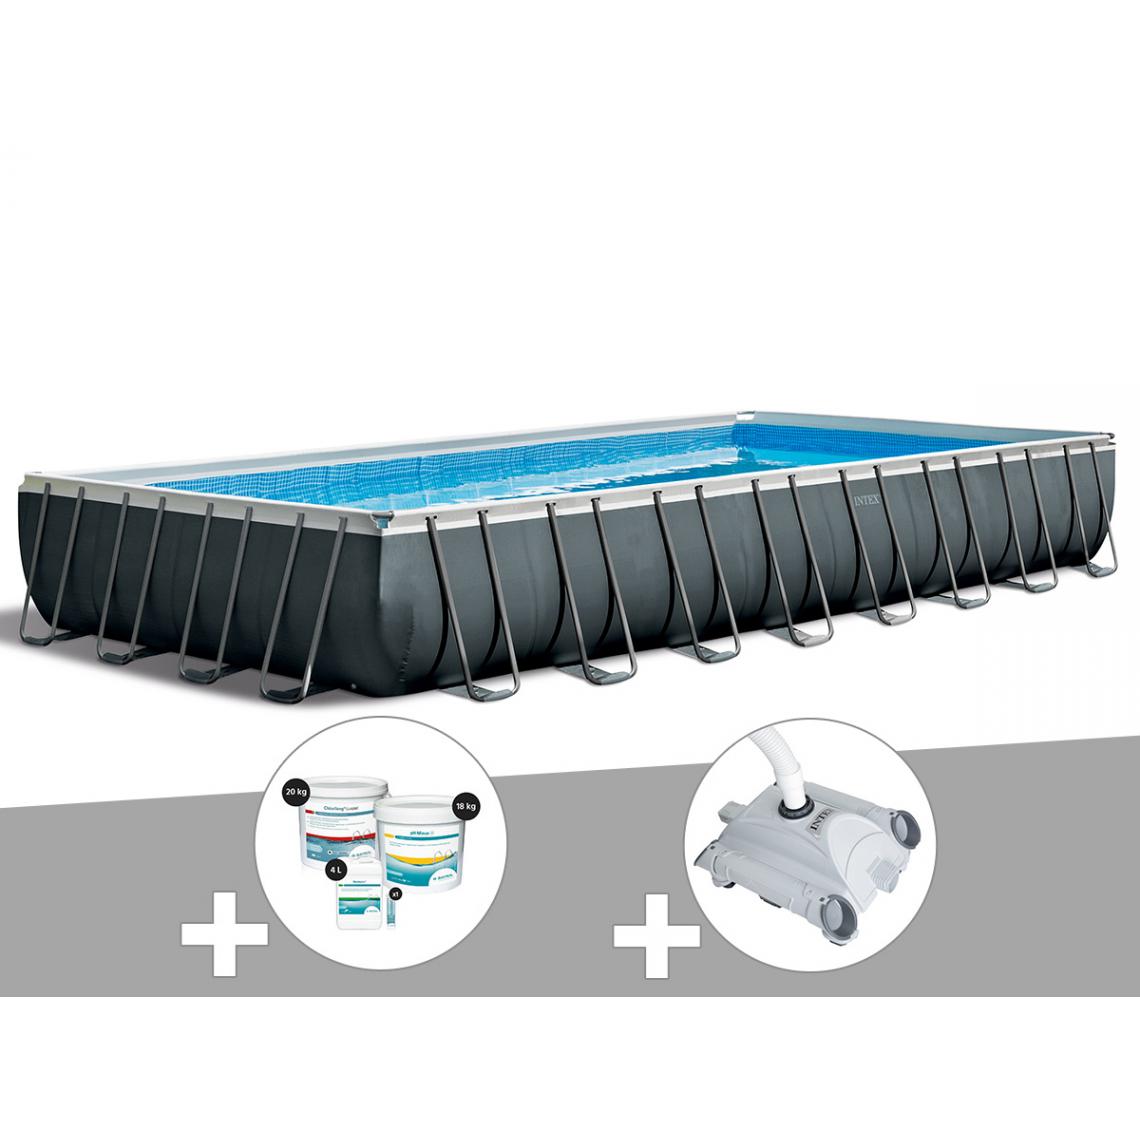 Intex - Kit piscine tubulaire Intex Ultra XTR Frame rectangulaire 9,75 x 4,88 x 1,32 m + Kit de traitement au chlore + Robot nettoyeur - Piscine Tubulaire